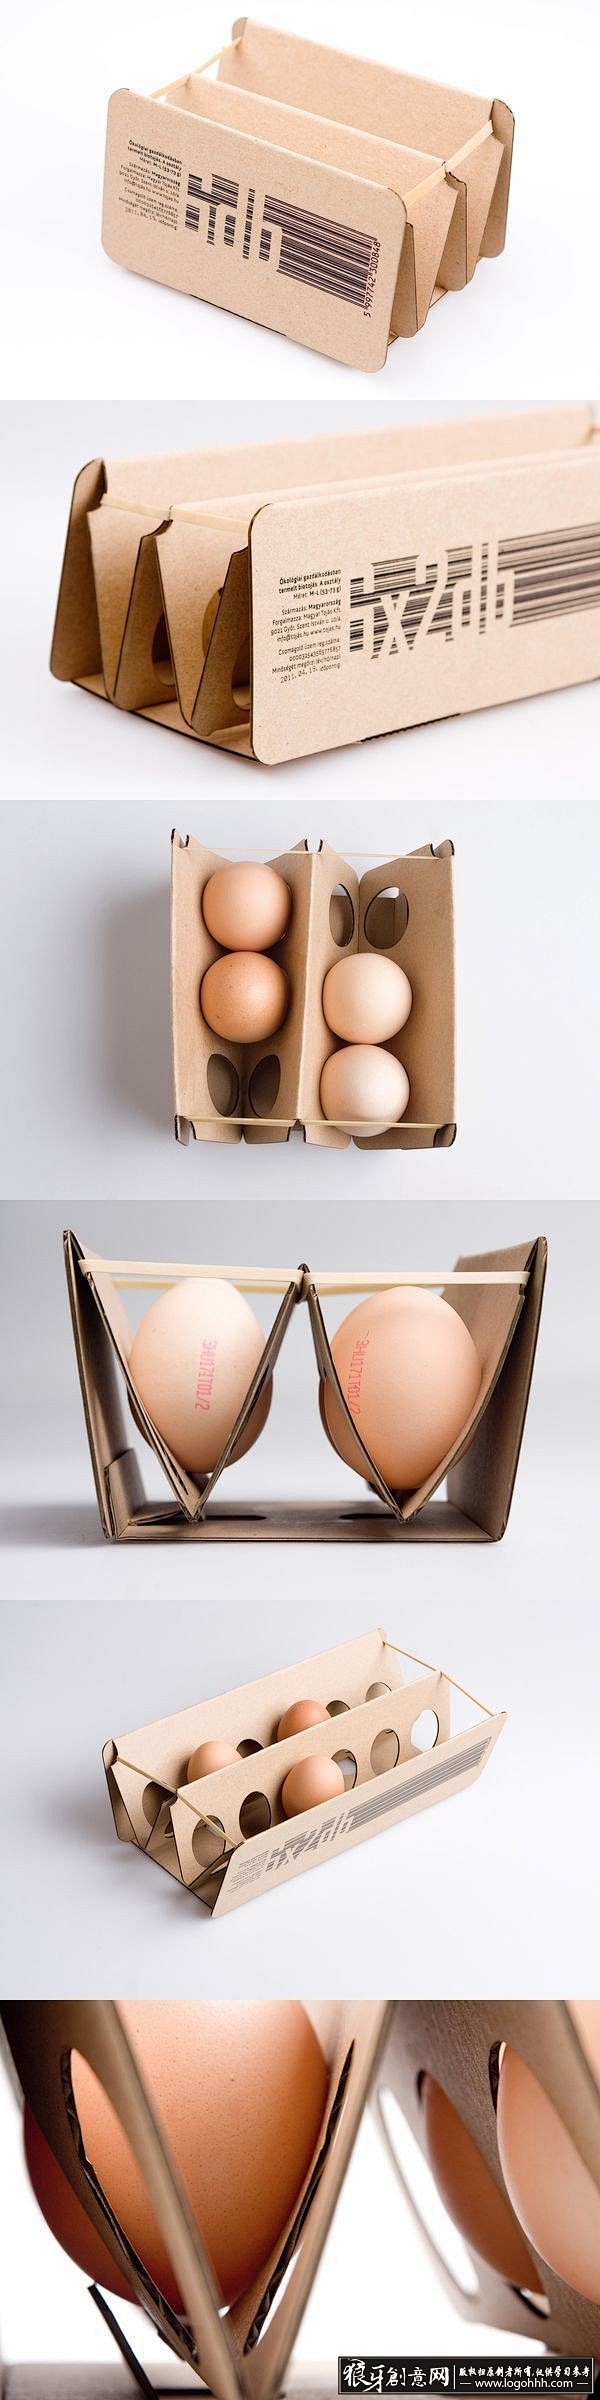 [包装灵感] 精美创意鸡蛋包装设计灵感 ...